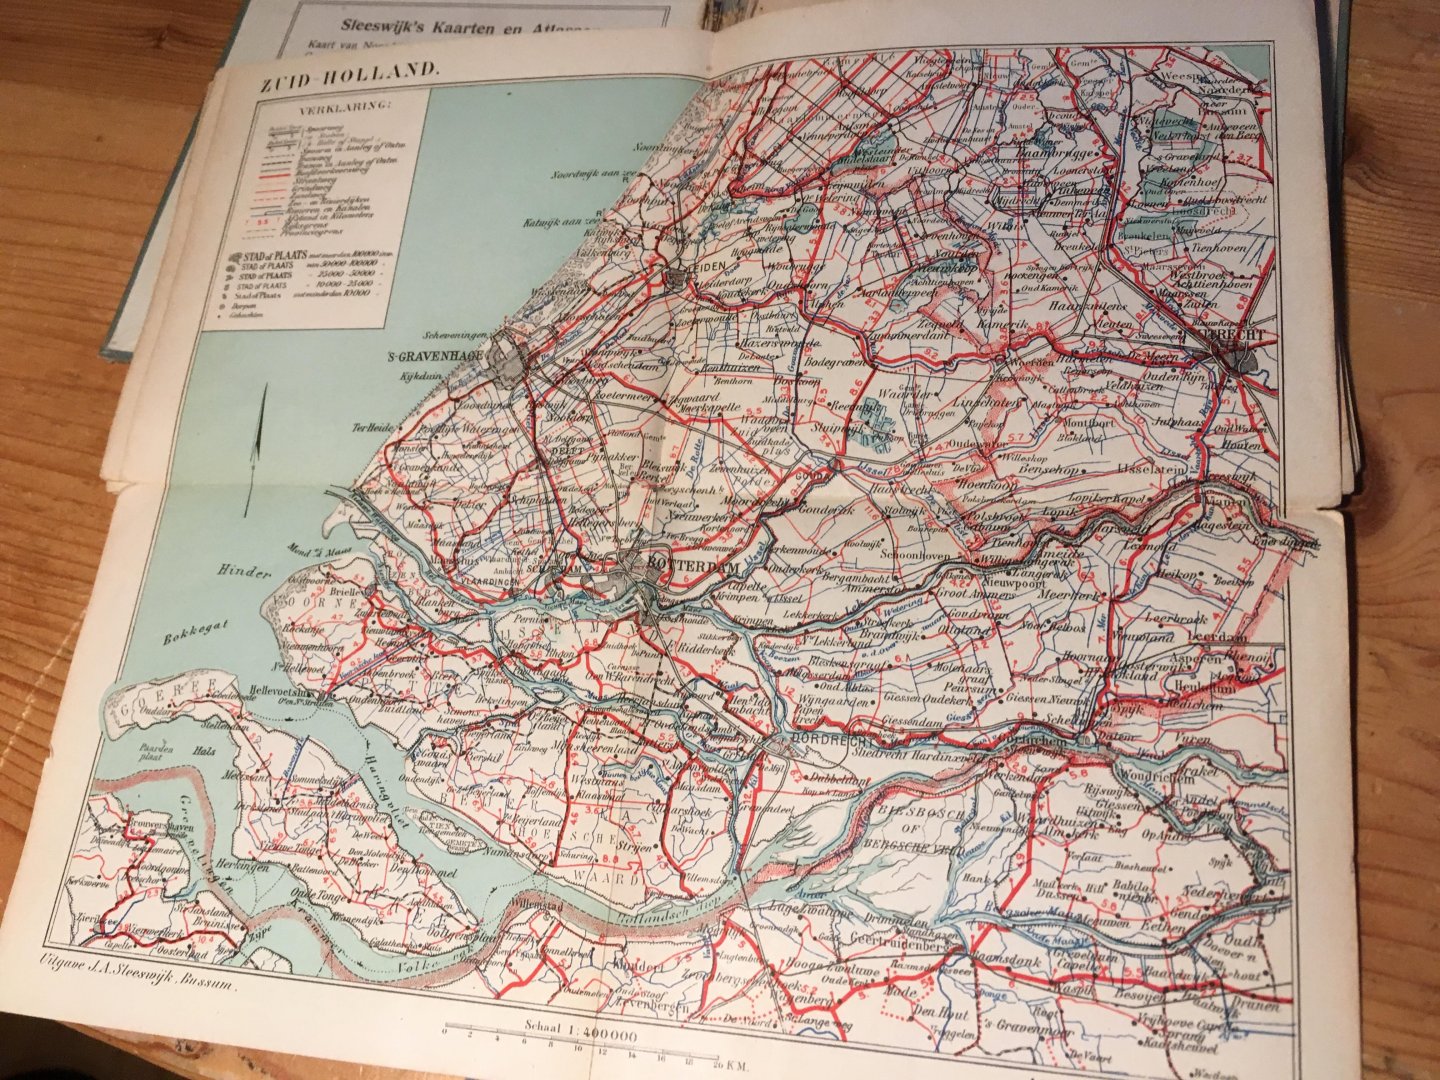 Sleeswijk - Sleeswijk's Zak-Atlas van Nederland voor Wandelaars, Wielrijders en Automobilisten